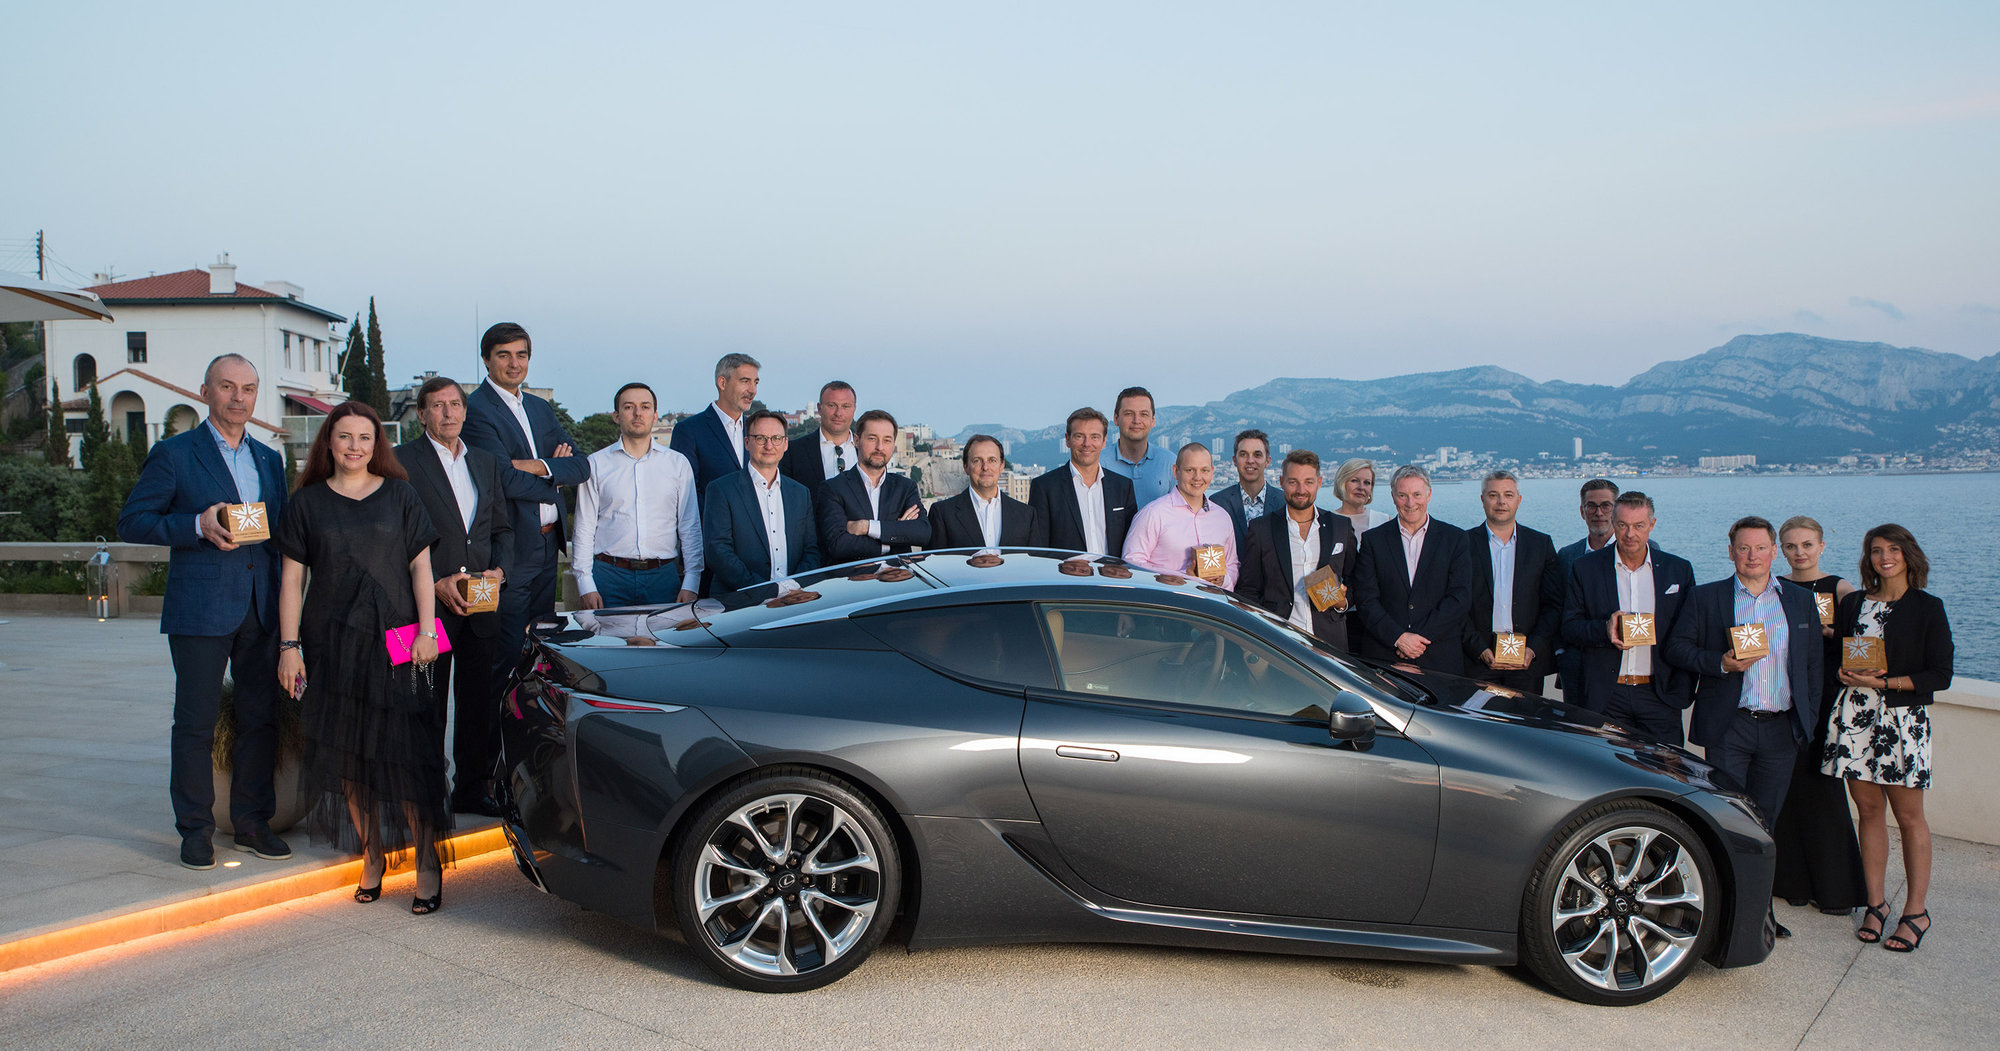 Lexus Sevilla condecorado con el Premio Kiwami 2018